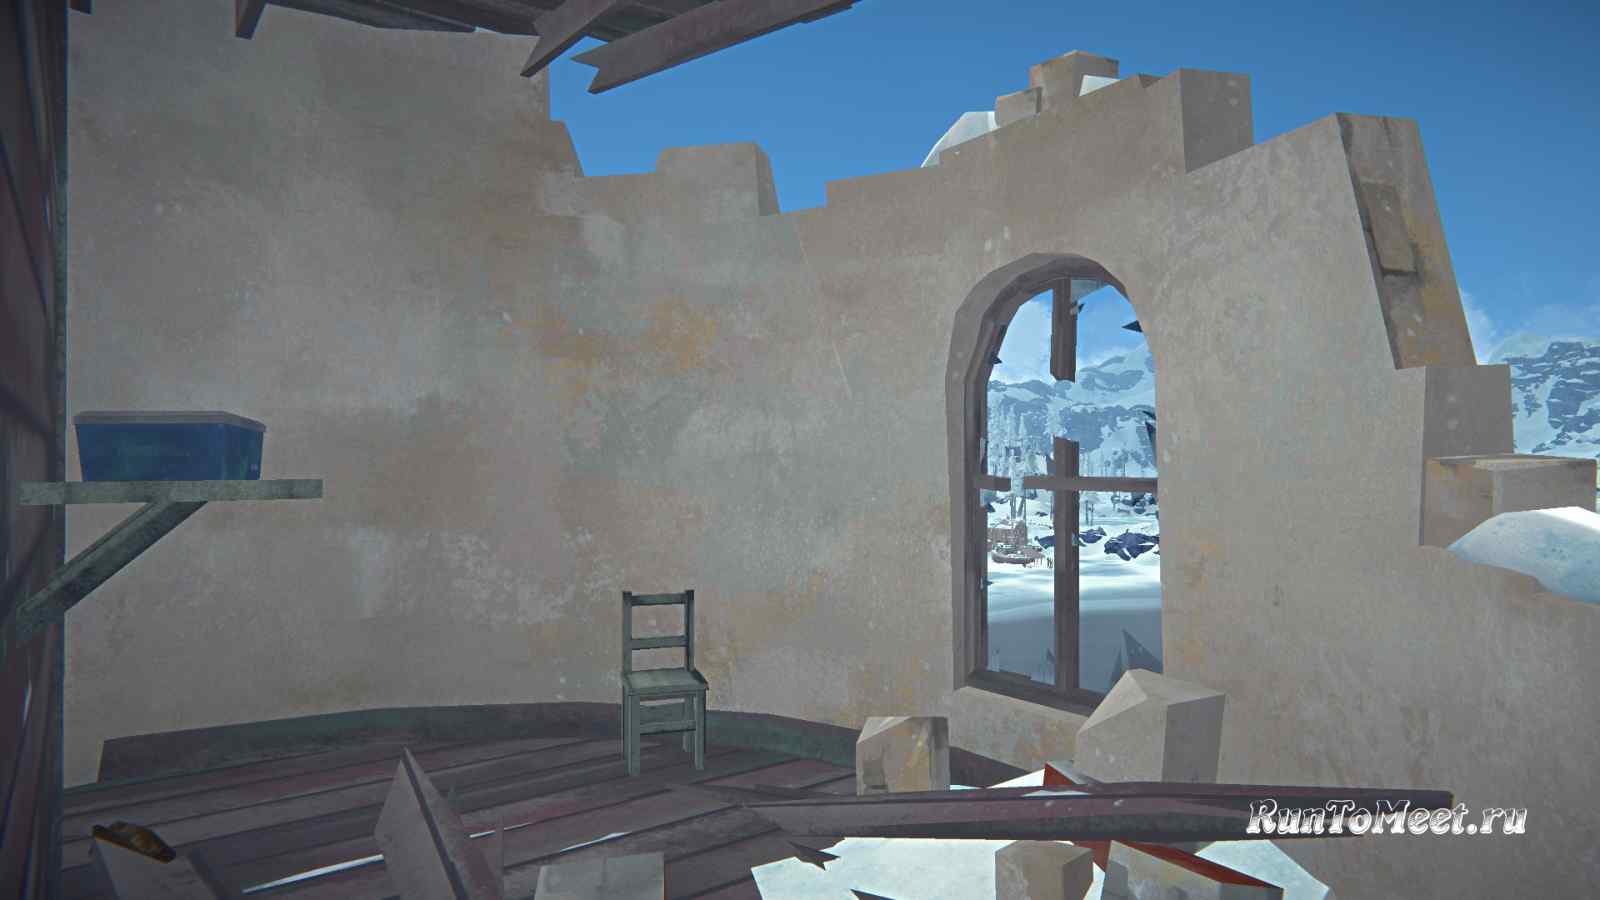 Интерьер второго этажа, Упавшего маяка, на локации Бледная бухта, в игре The long dark